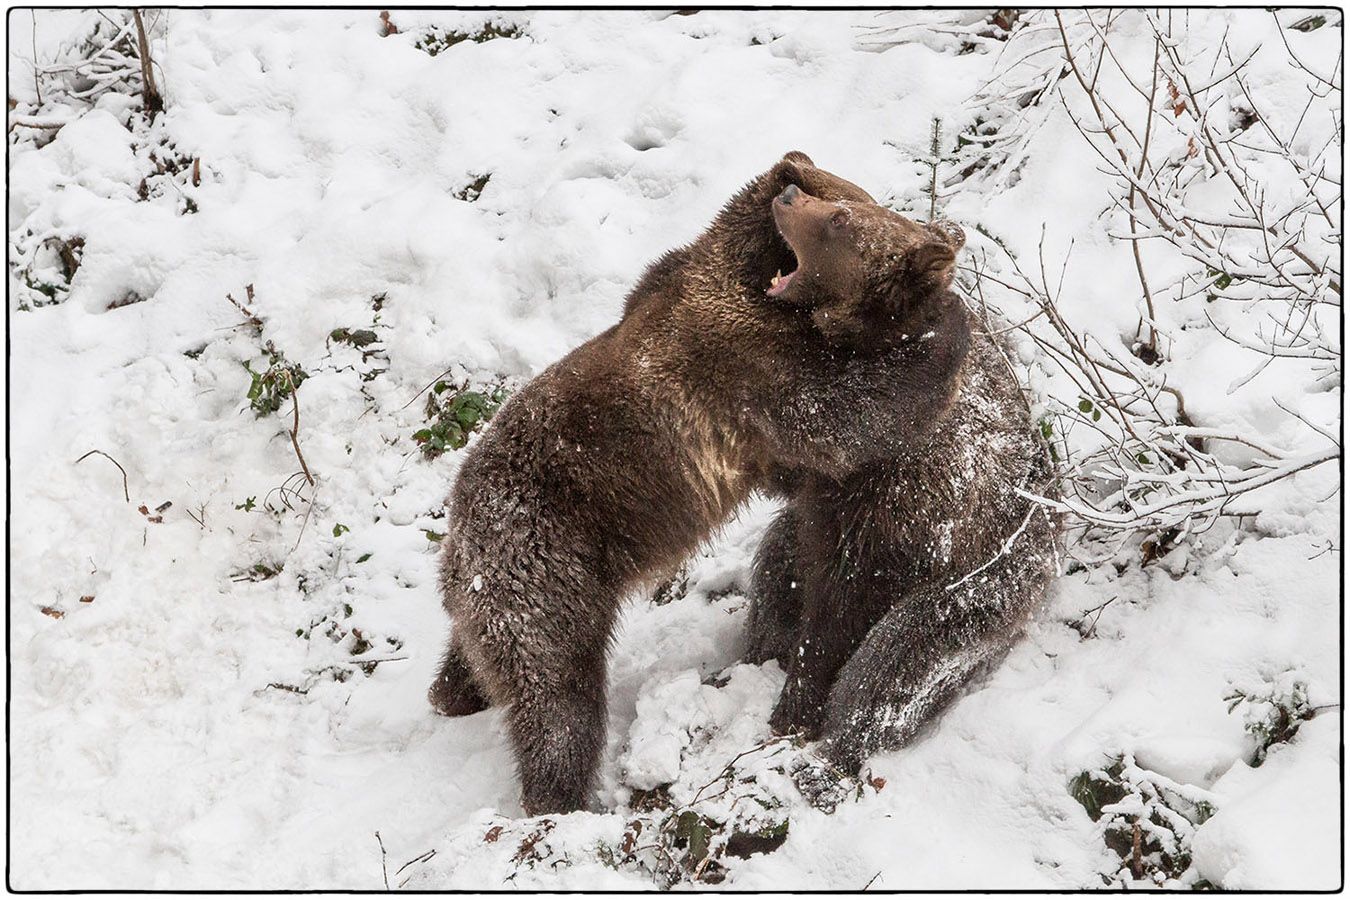 Jeu d'ours - Photo Alain Besnard